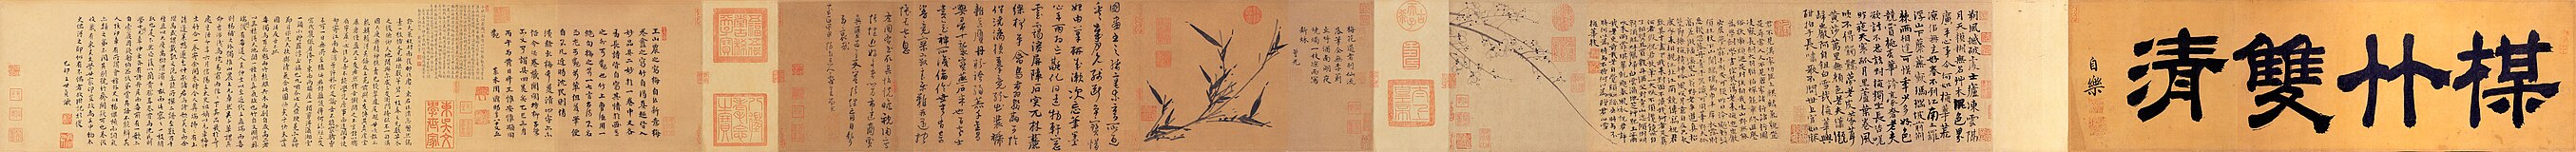 Dubbele zuiverheid van bamboe en pruimenbloesem, een handrol met een bamboeschildering van Wu Zhen en een pruimenbloesemschildering van Wang Mian (1287–1359); gewassen inkt op papier, collectie Nationaal Paleismuseum[2]